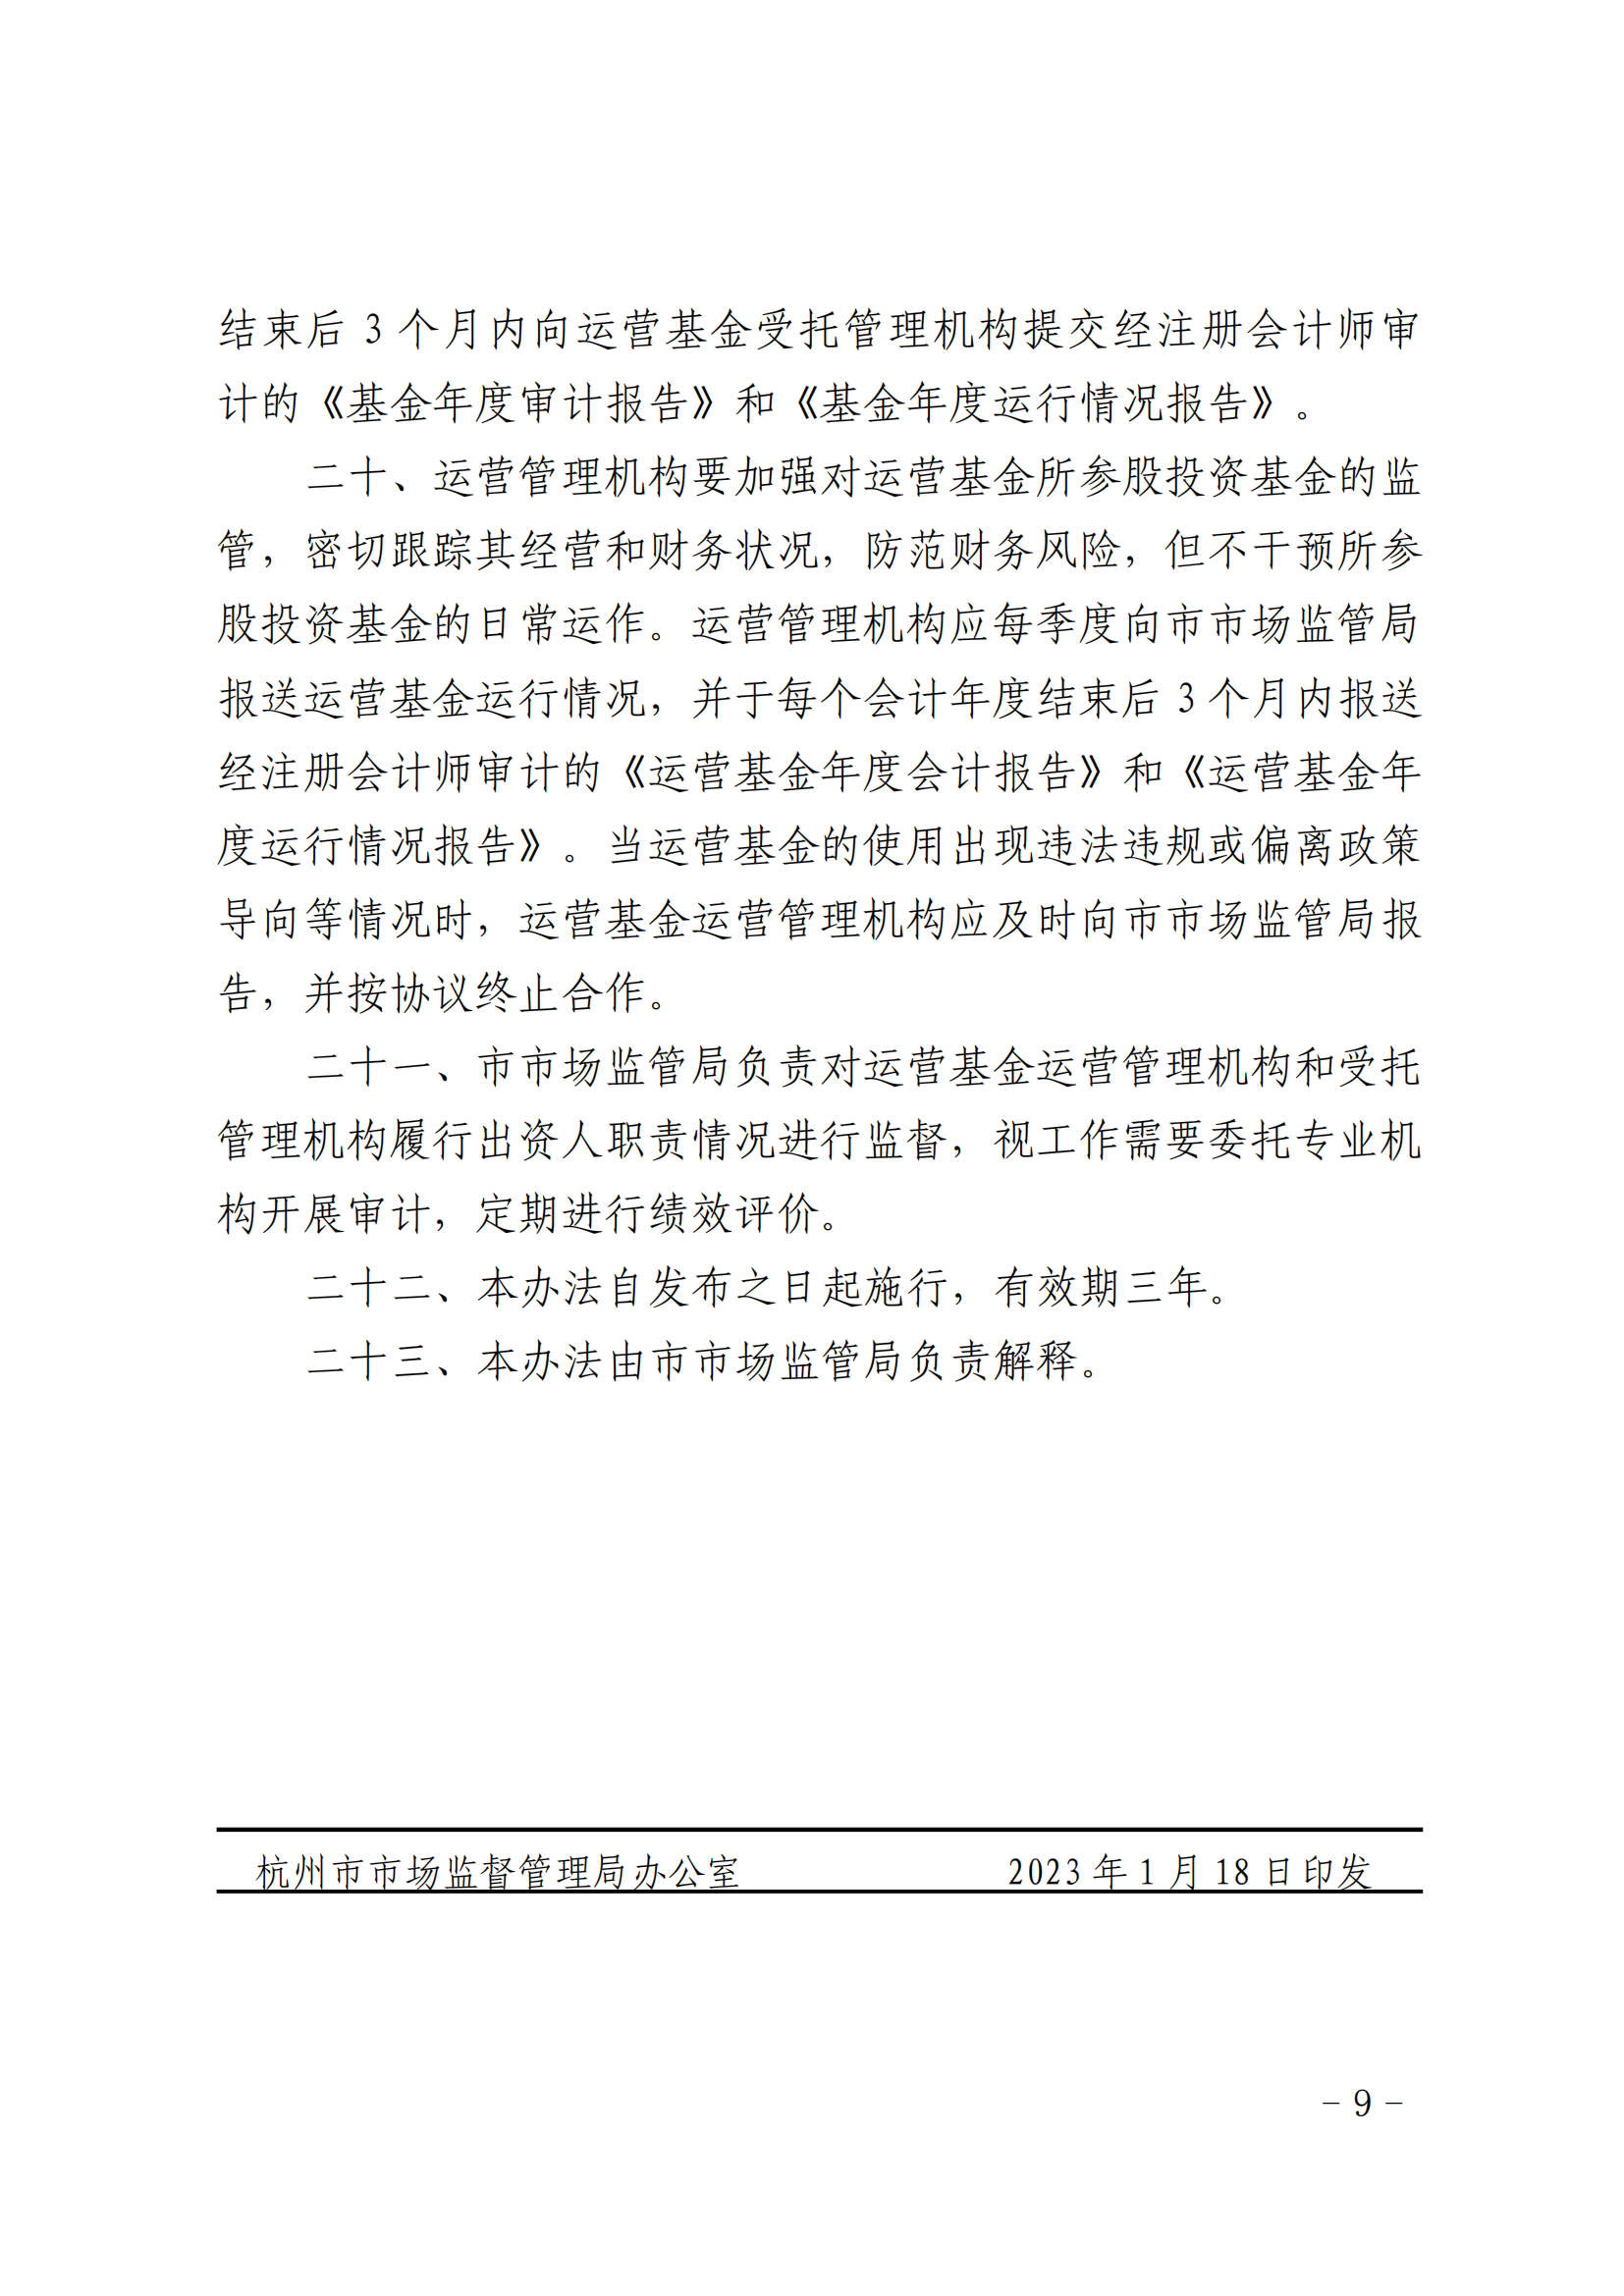 《杭州市重点产业知识产权运营基金管理办法》全文发布！